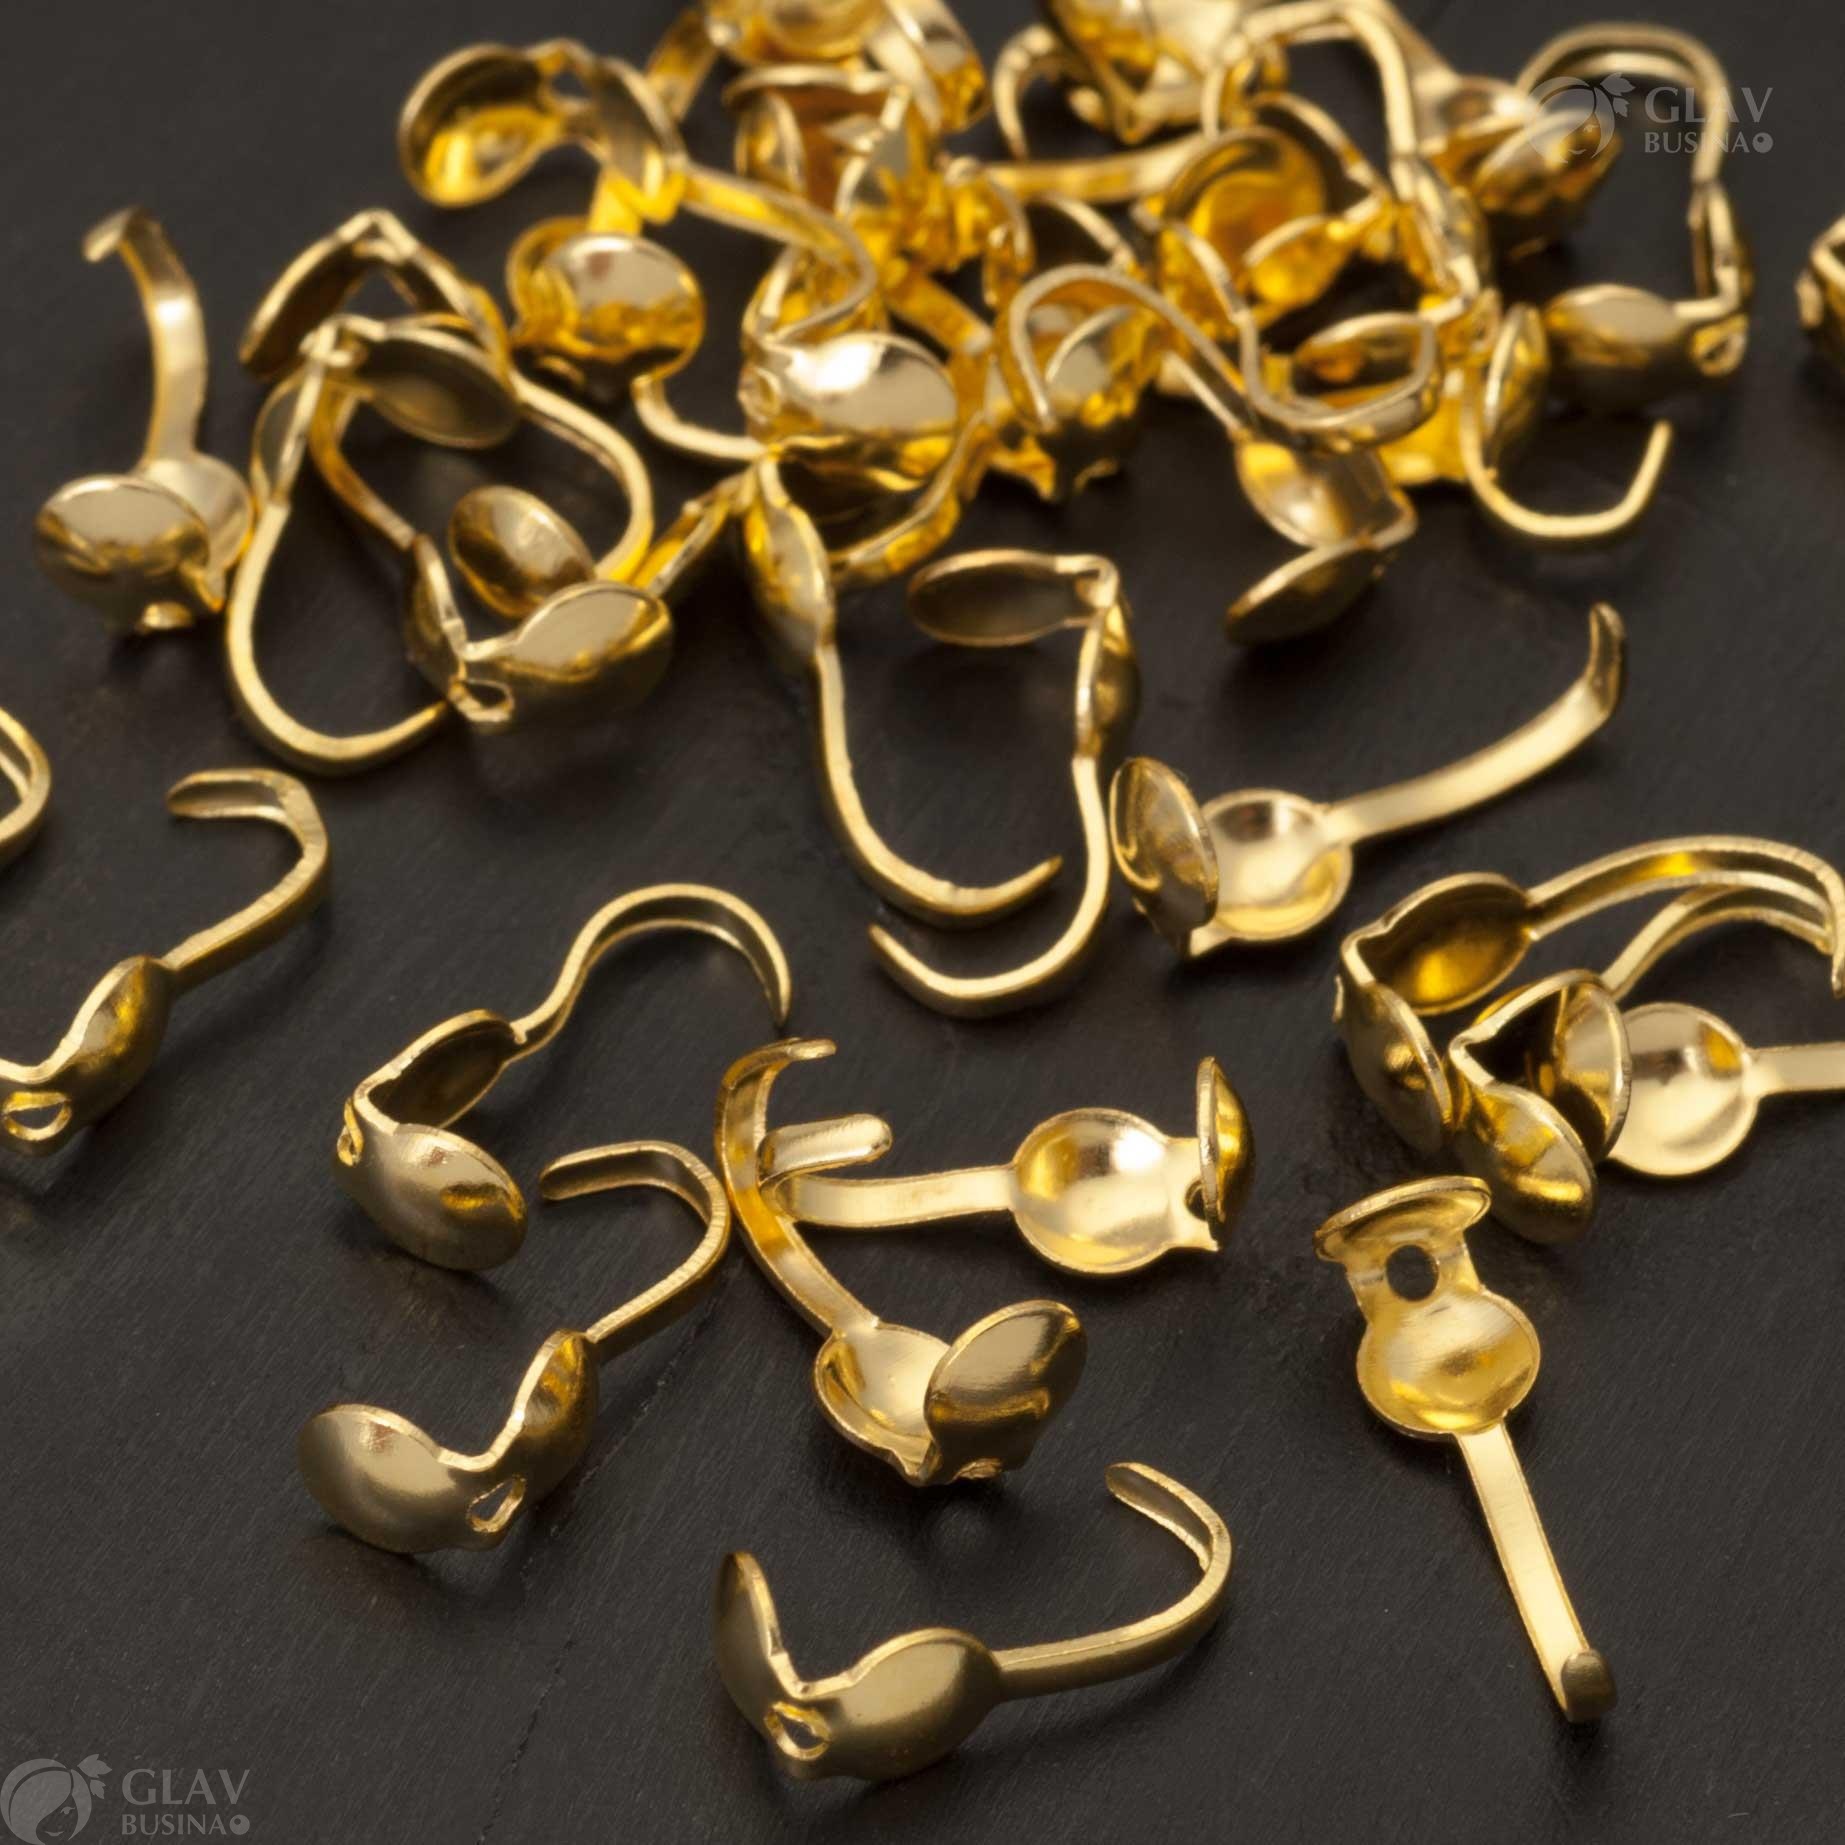 Скуфейки железные размером 8х3.7мм с отверстием 1.5мм, цвета желтого золота для ювелирных работ.